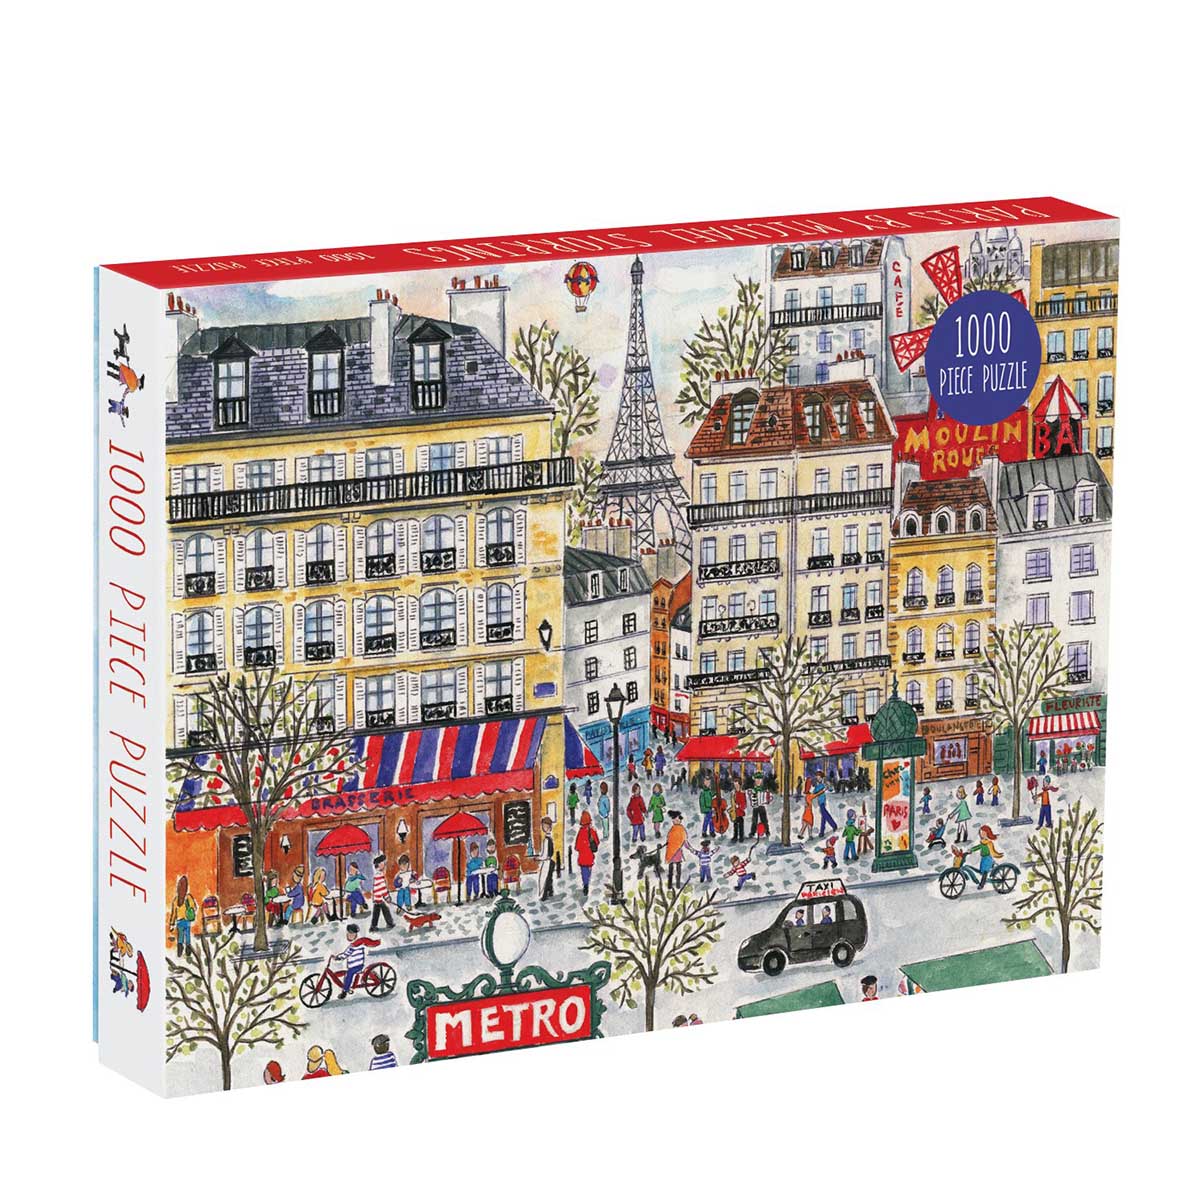 Paris by Michael Storrings (1000 pc puzzle)